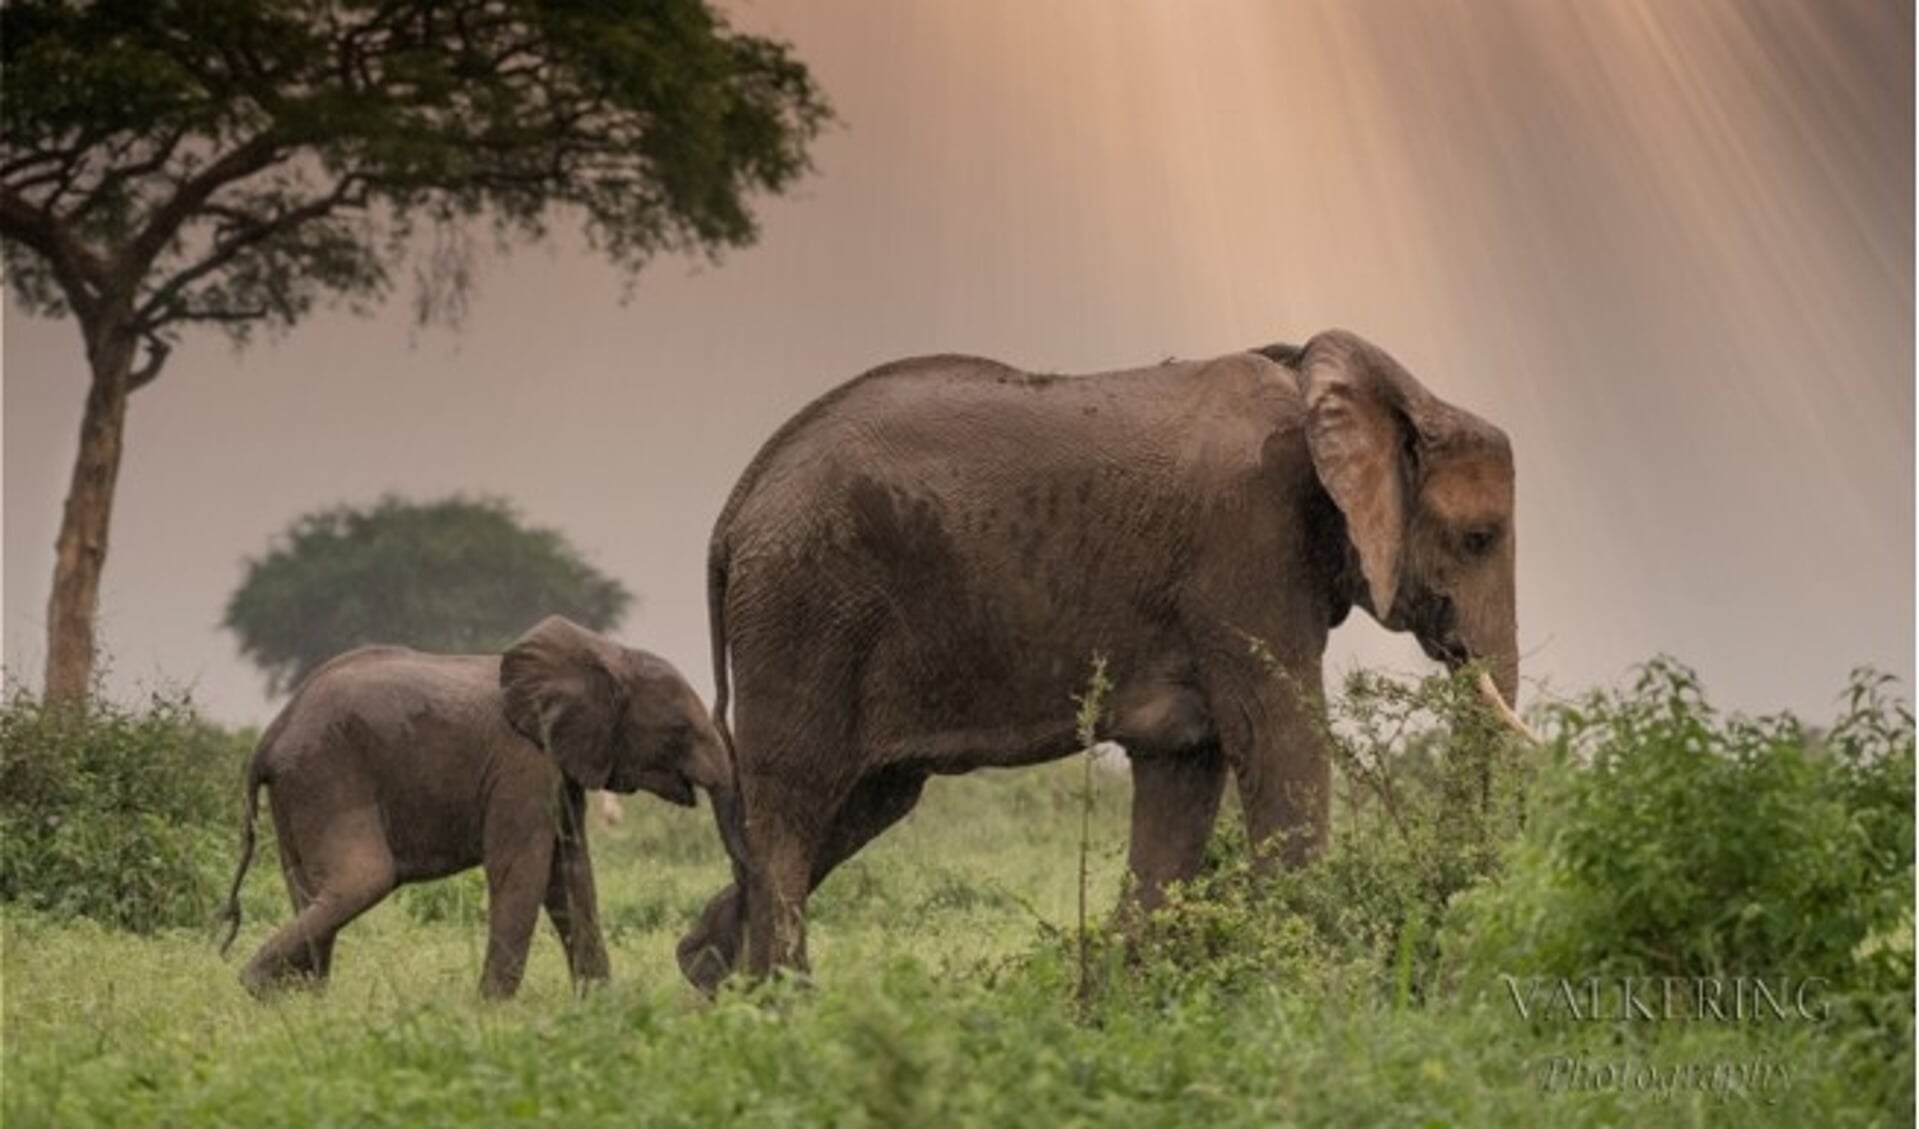 Moeder olifant en jong, gefotografeerd in Oeganda.